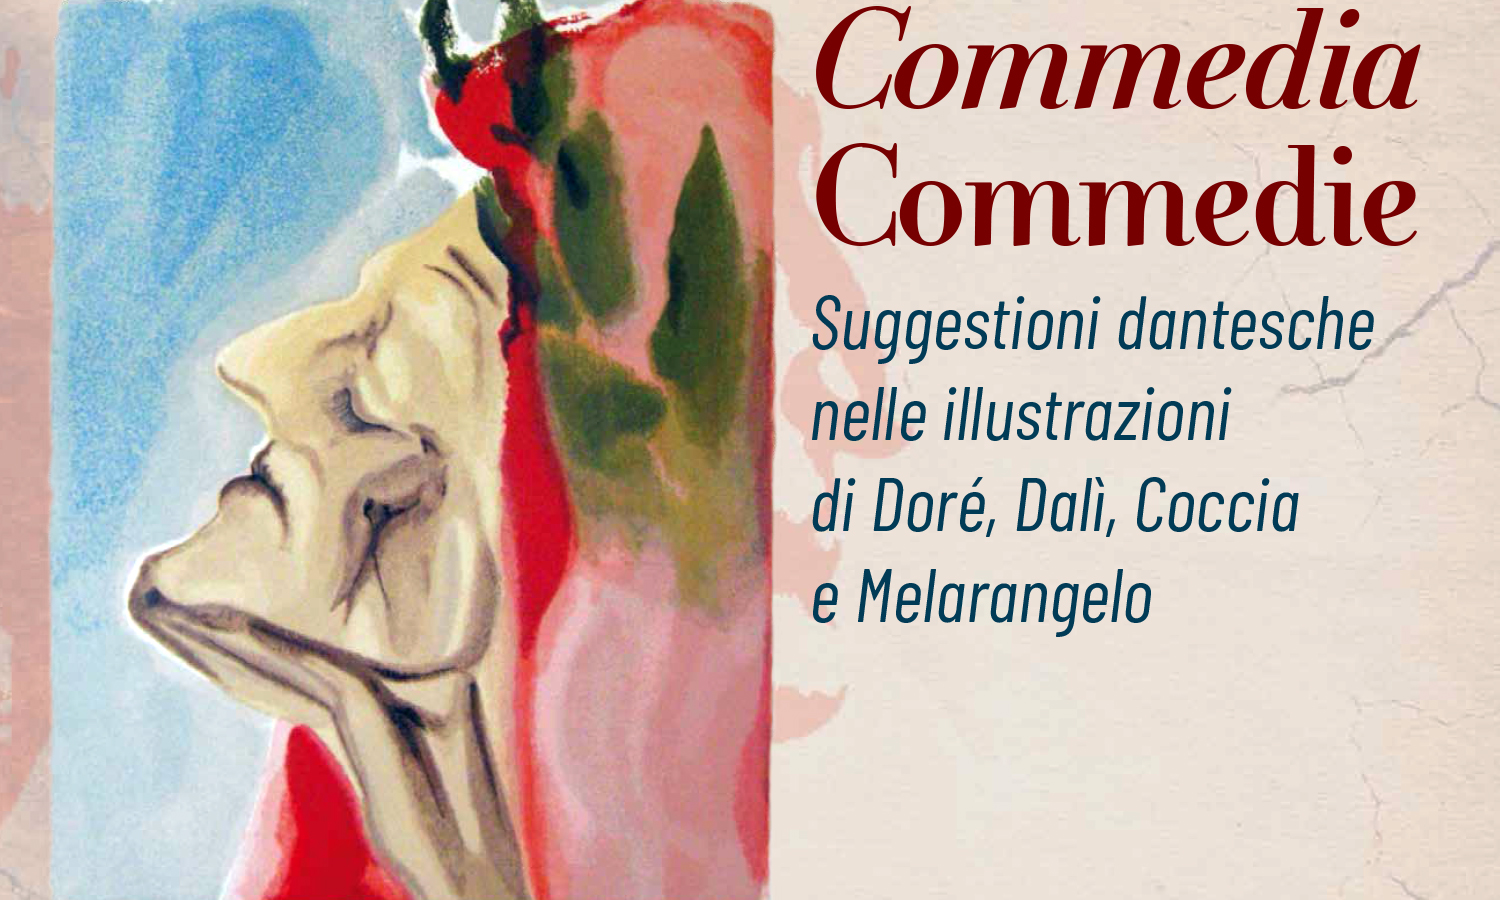 Roseto&Fondazione Celommi: al via:” Commedia-Commedie”, oltremondo dantesco per le celebrazioni dei 700 anni dalla sua morte